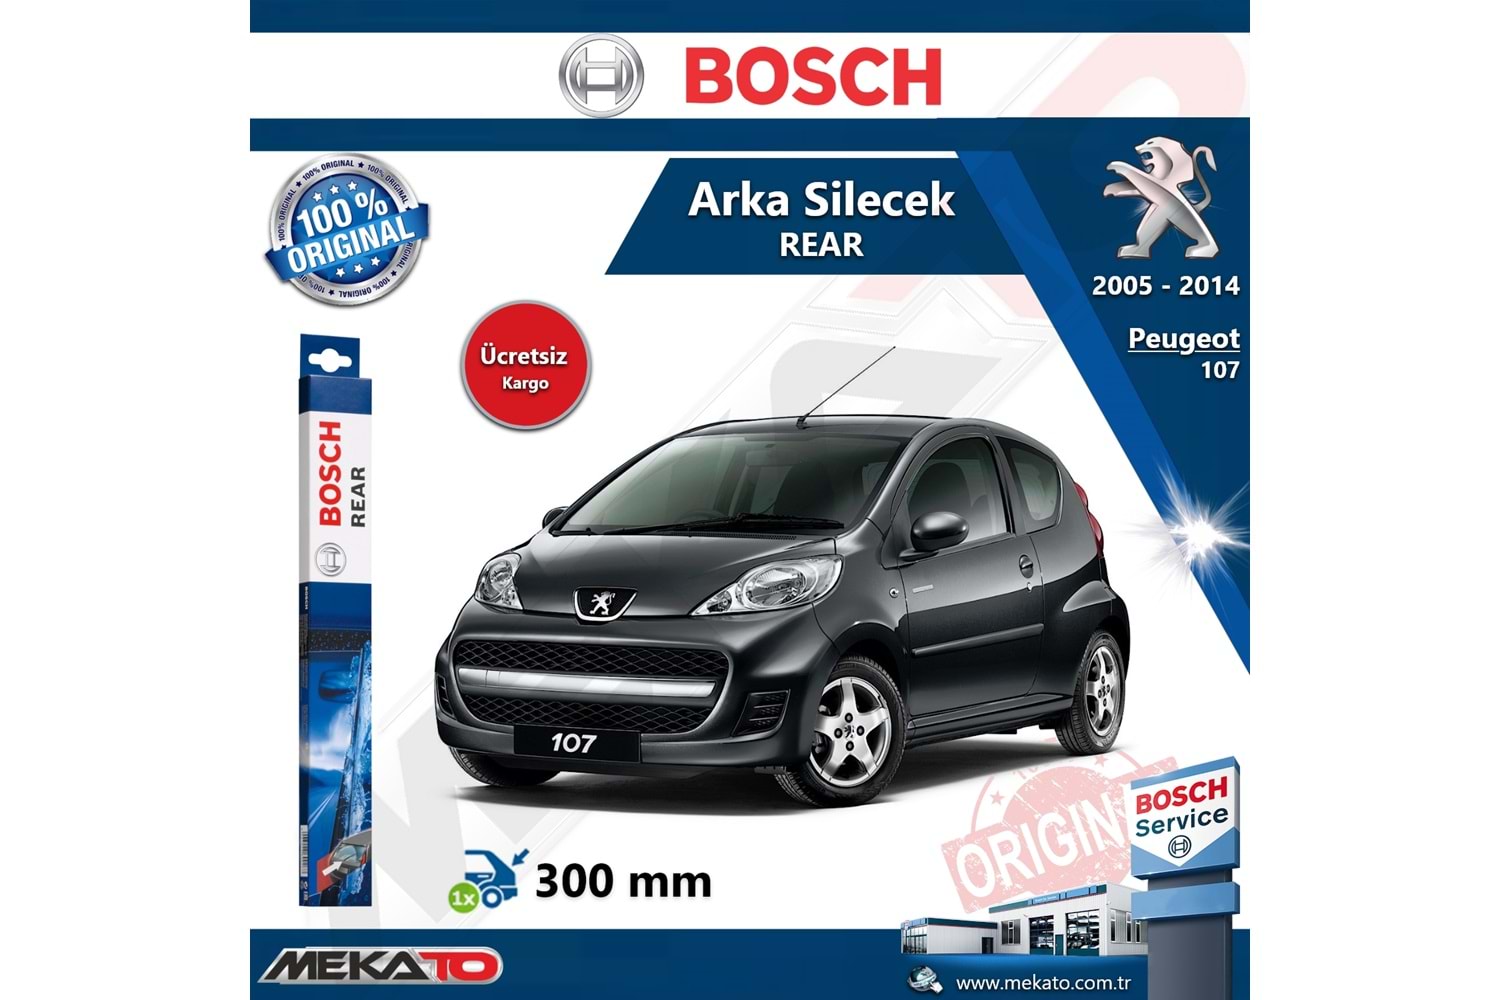 Peugeot 107 Arka Silecek Bosch Rear 2005-2014